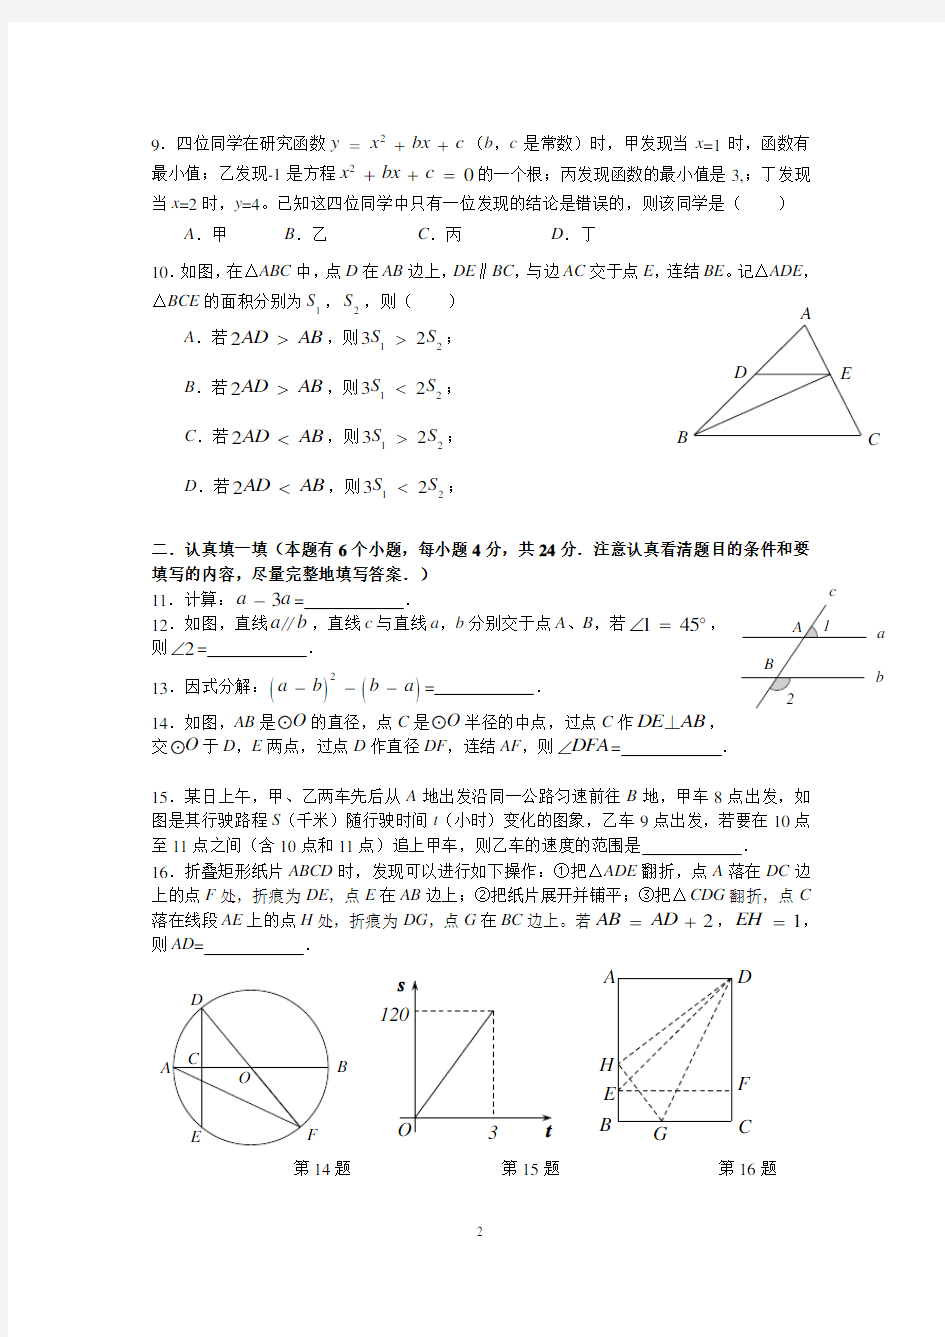 2018年杭州中考数学试卷